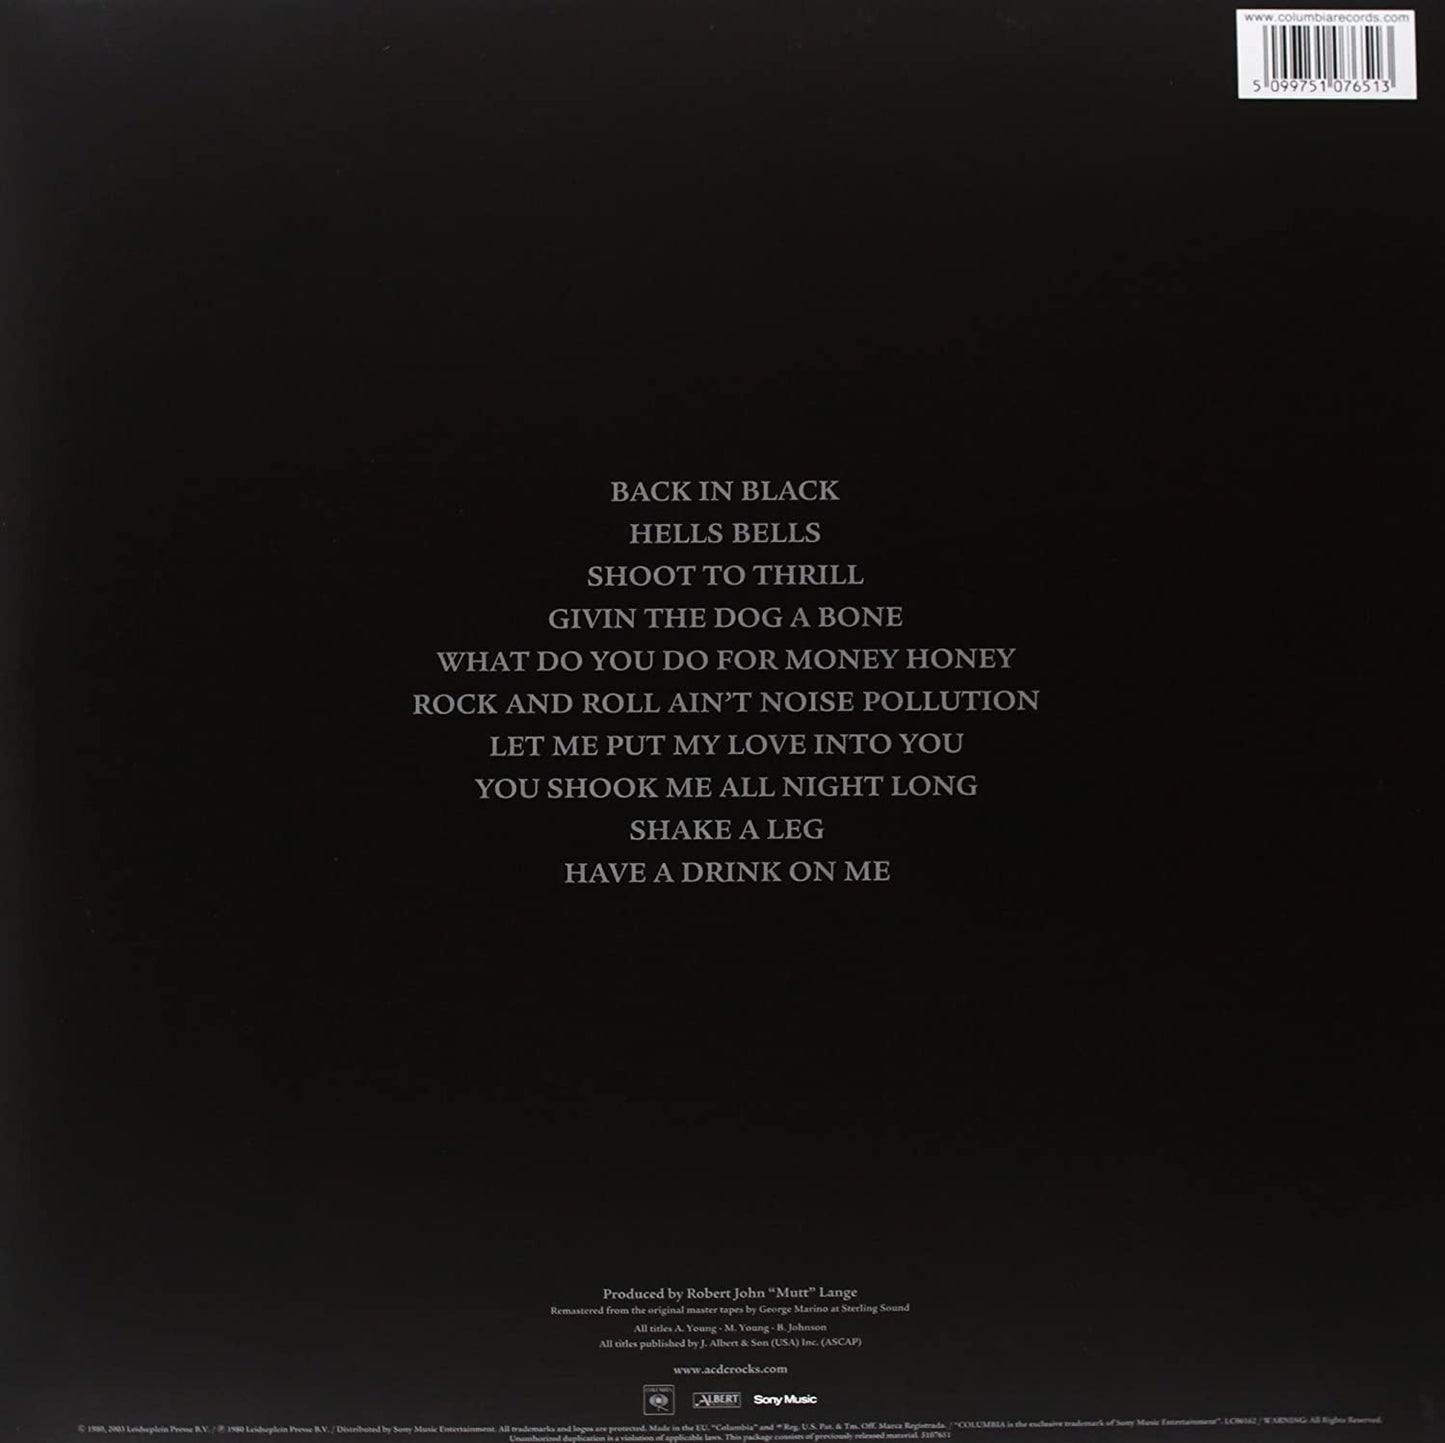 AC/DC: Back In Black (180g deluxe vinyl)